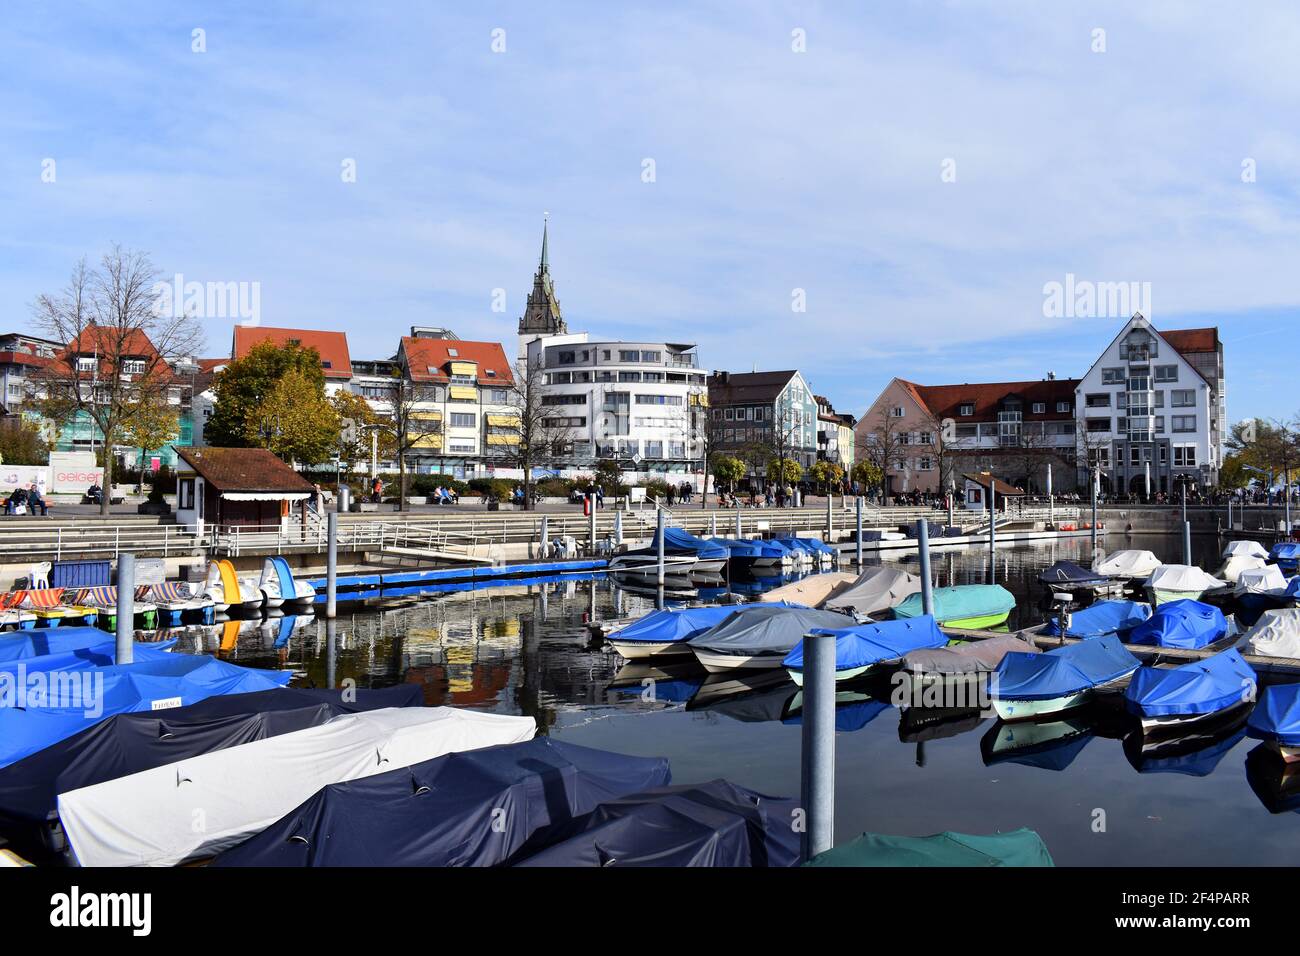 Pier on Lake Constance. Friedrichshafen. Stock Photo